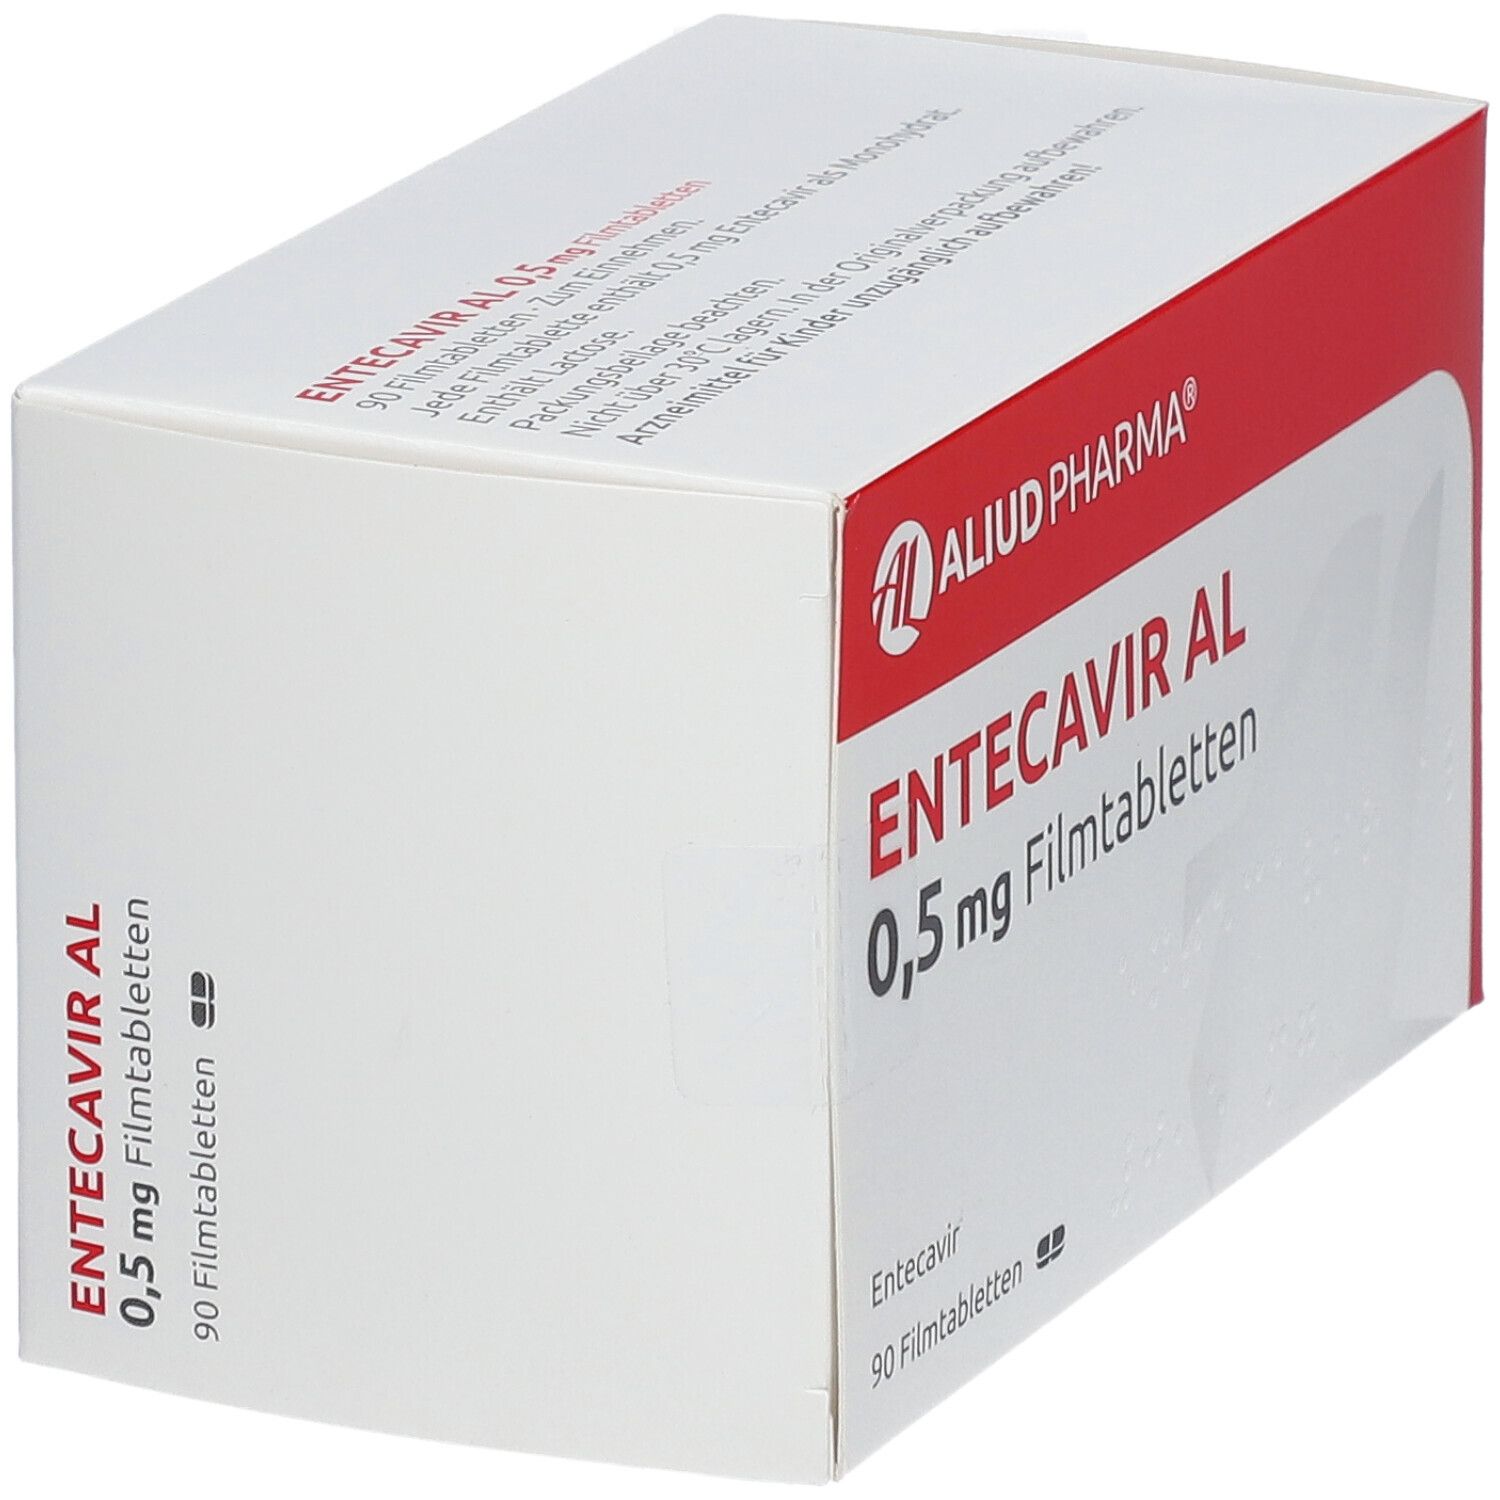 ENTECAVIR AL 0,5 mg Filmtabletten